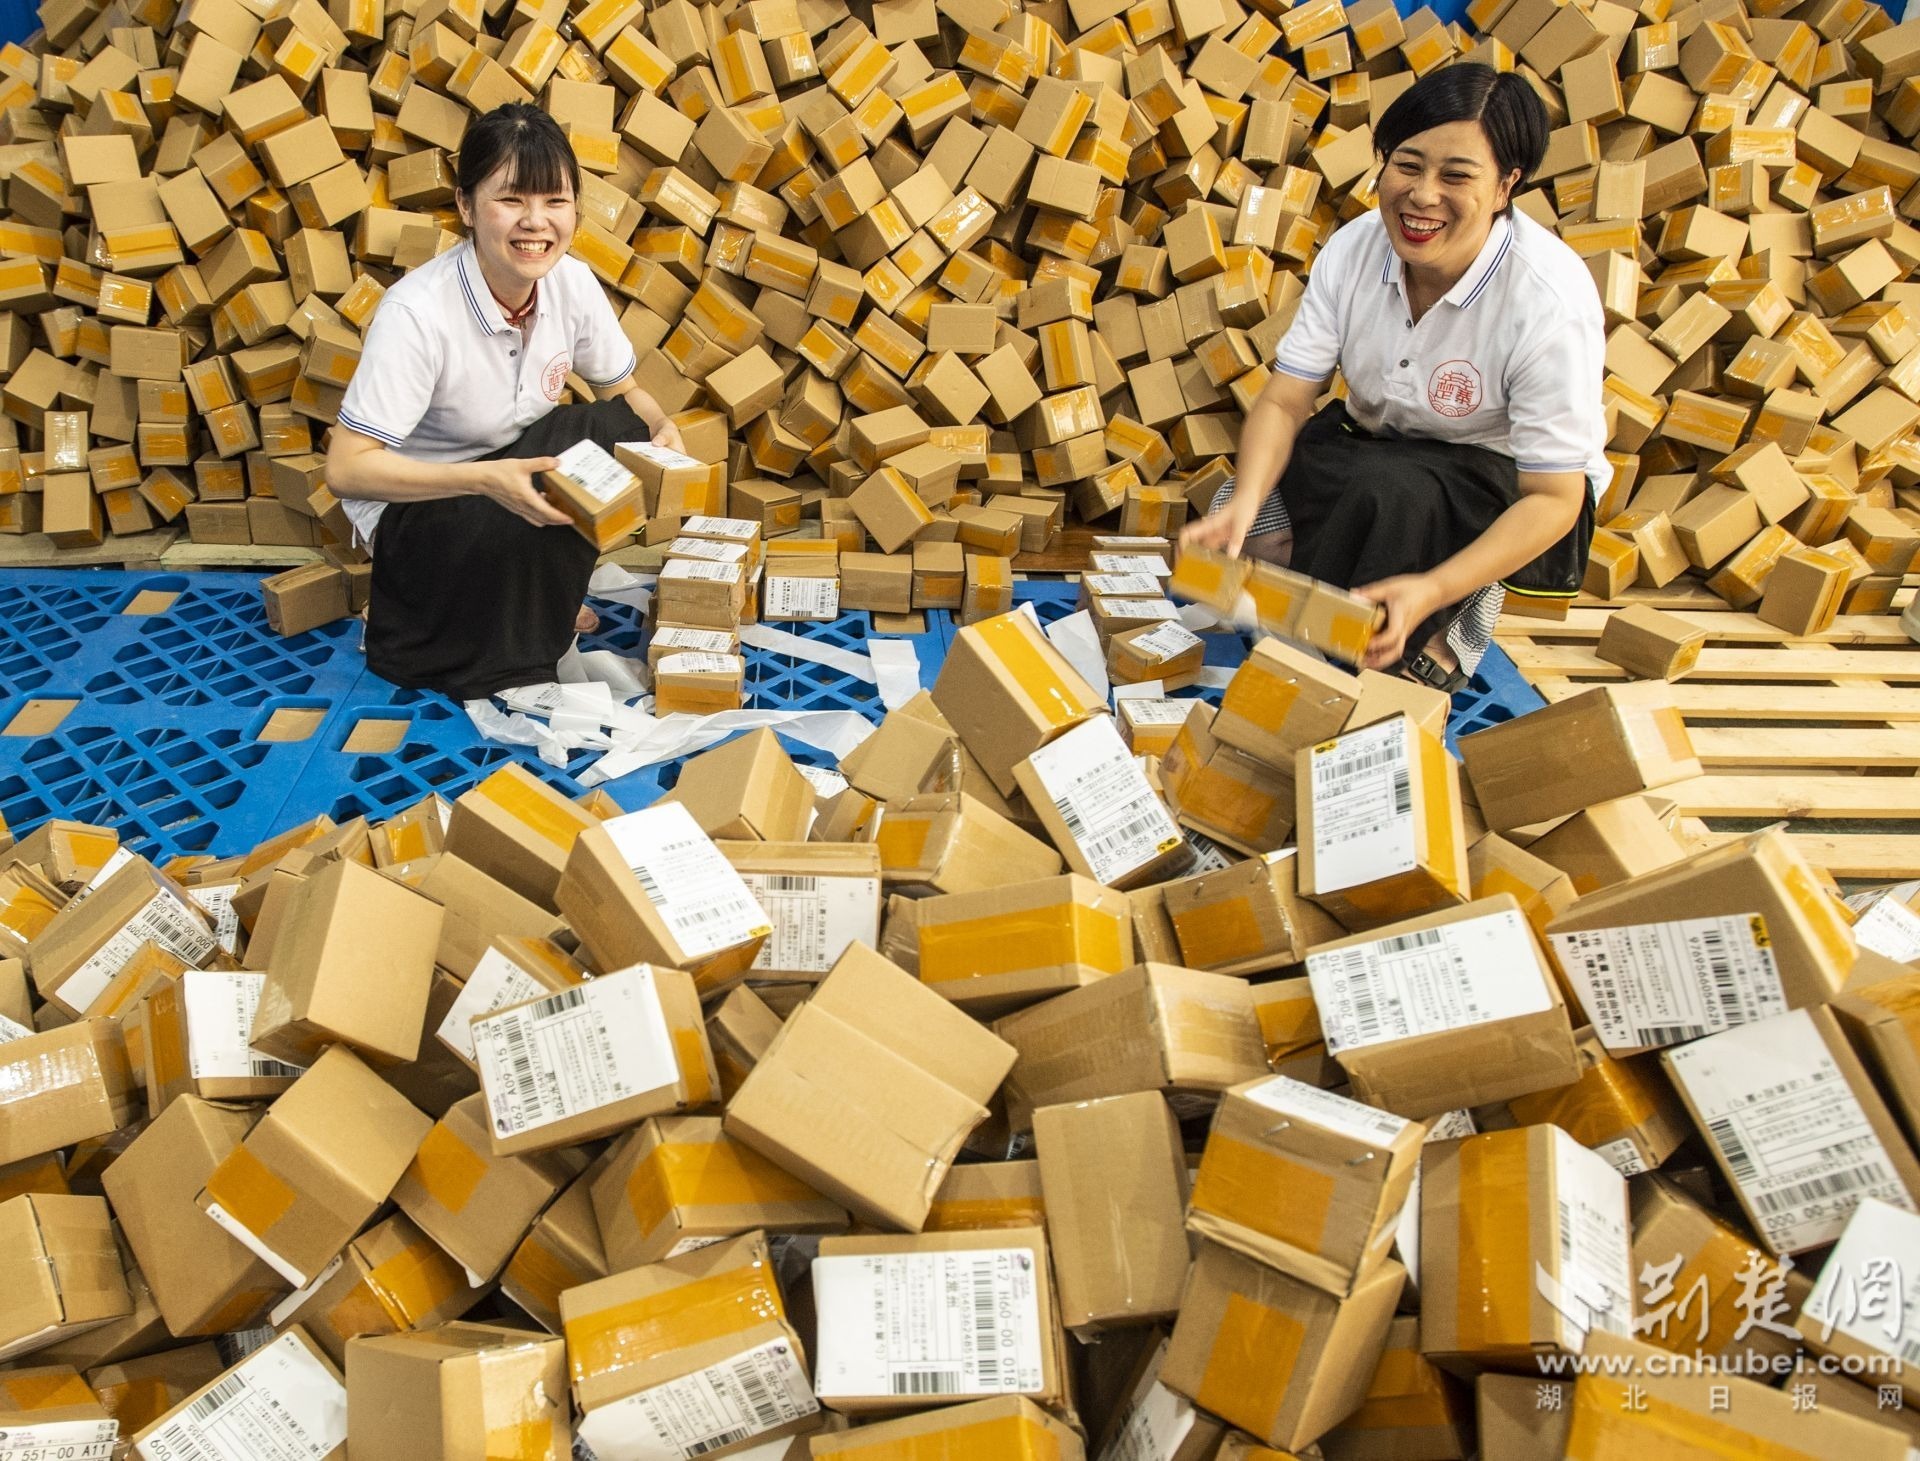 湖北楚寨发酵制品有限公司工人将传统酵母打包后准备发快递